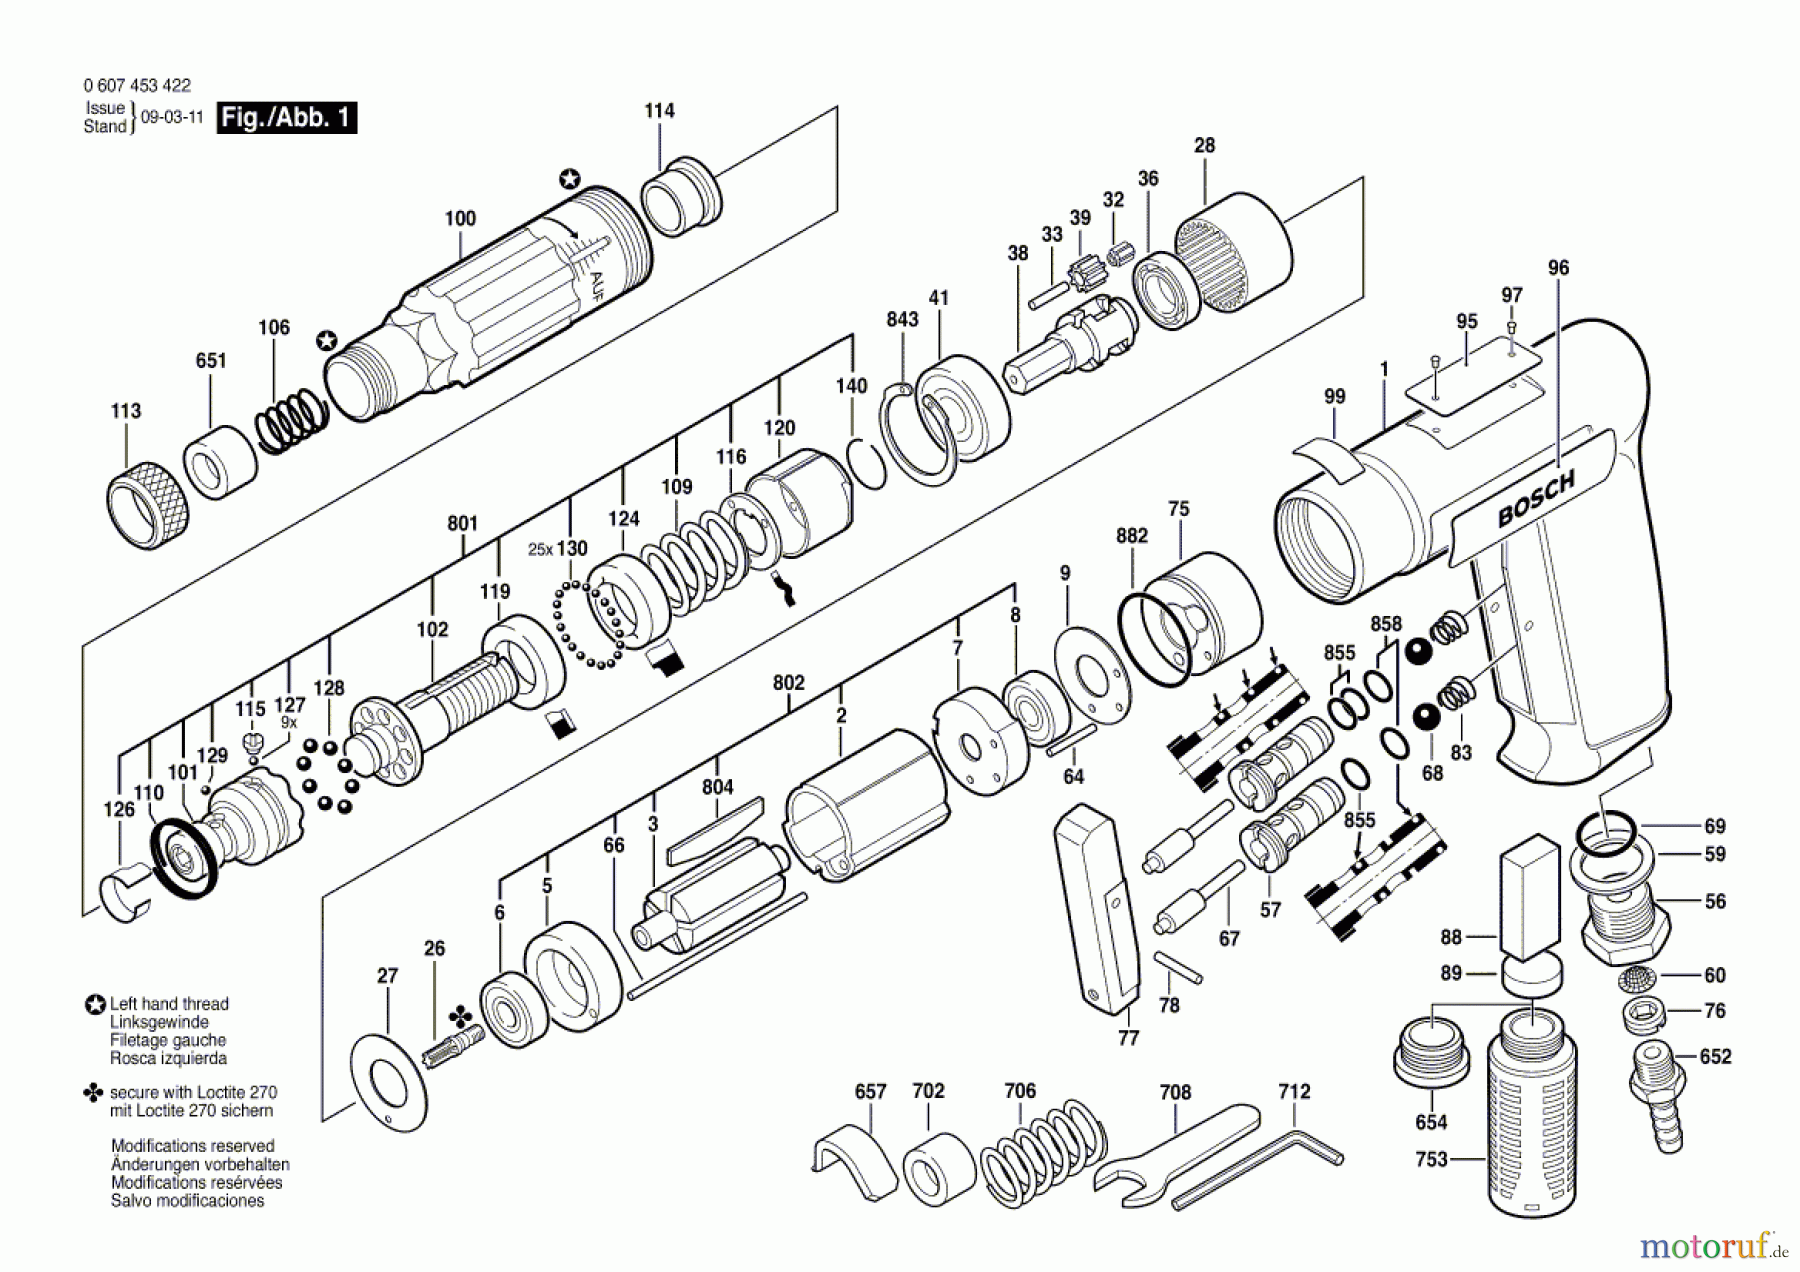  Bosch Werkzeug Pw-Schrauber-Ind 180 WATT-SERIE Seite 1